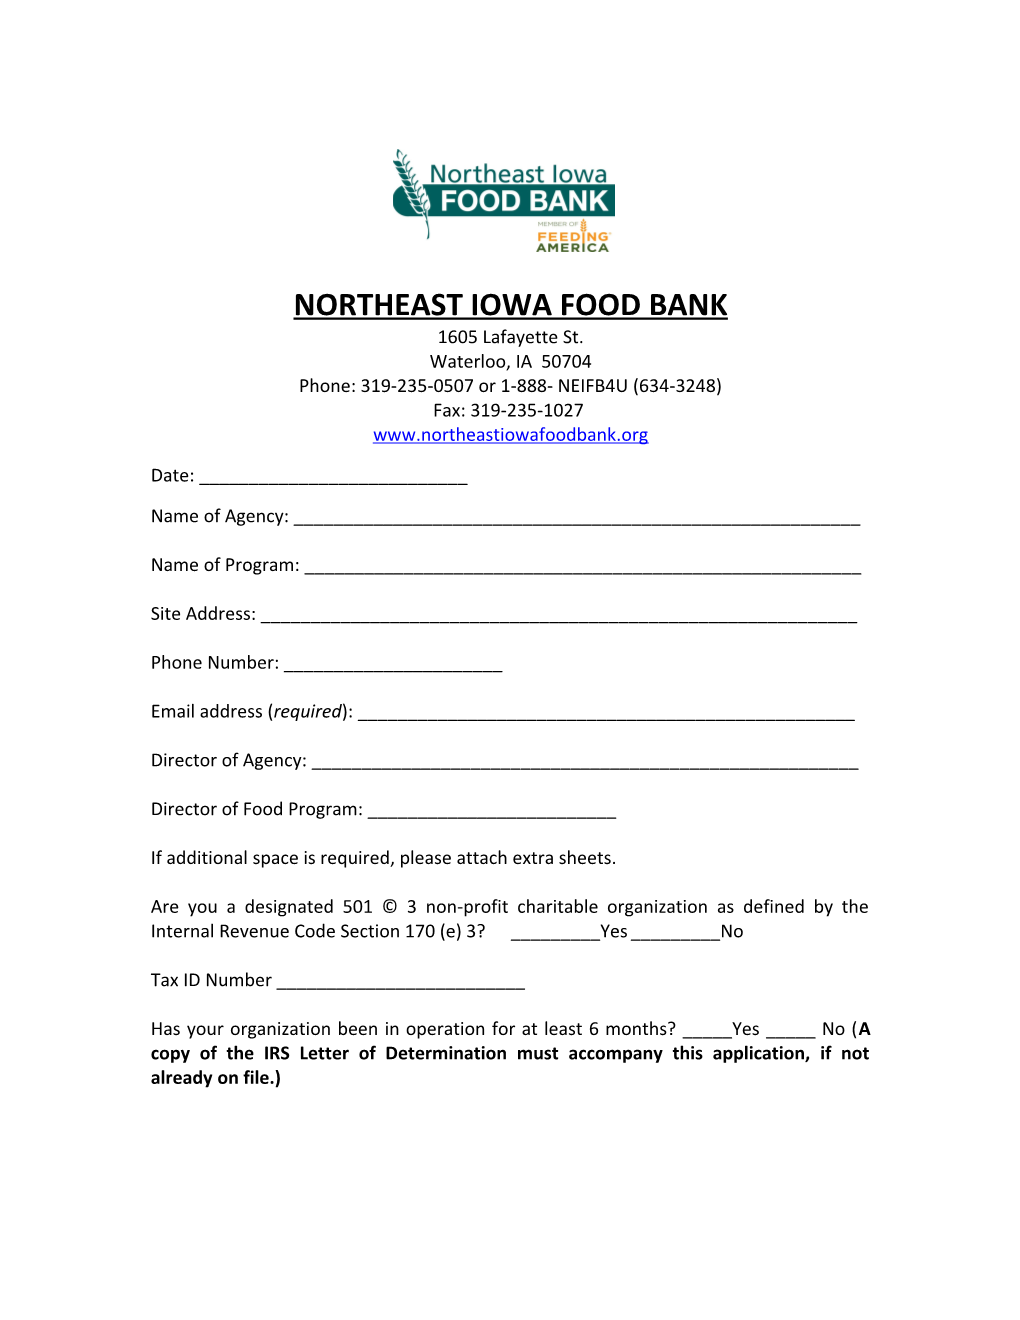 Northeast Iowa Food Bank